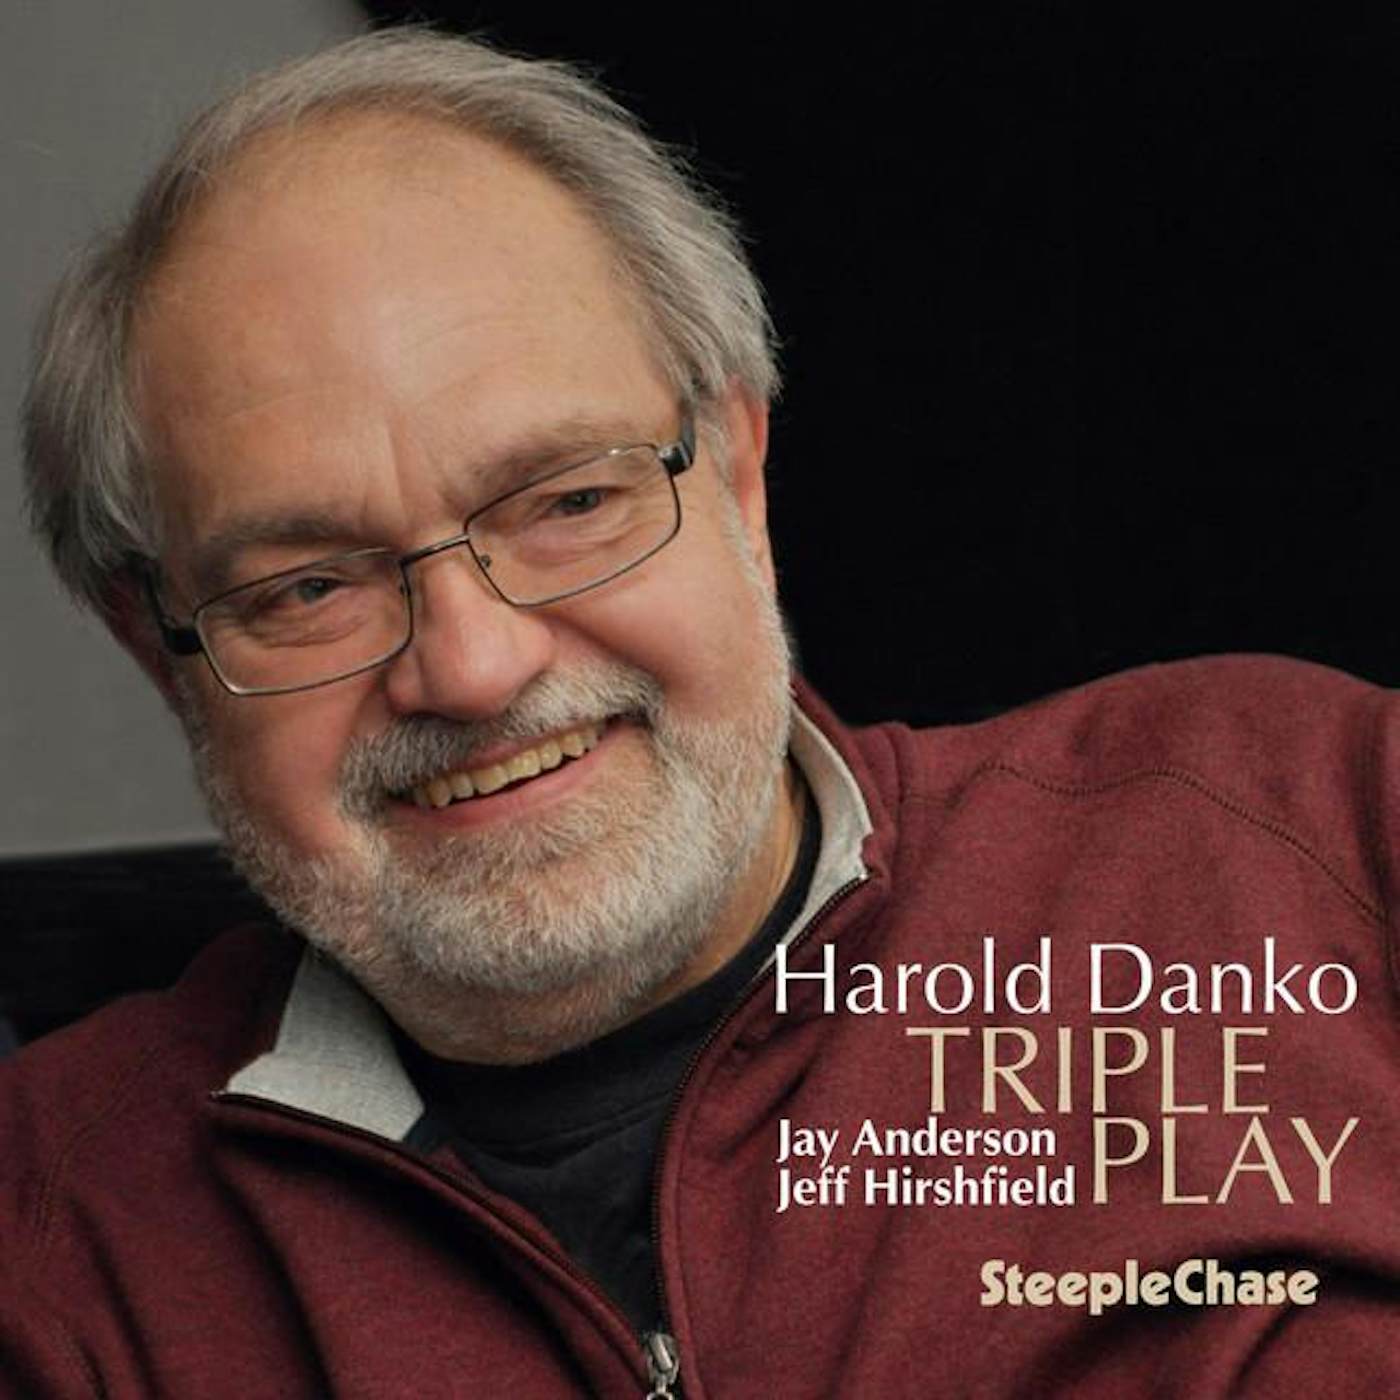 Harold Danko